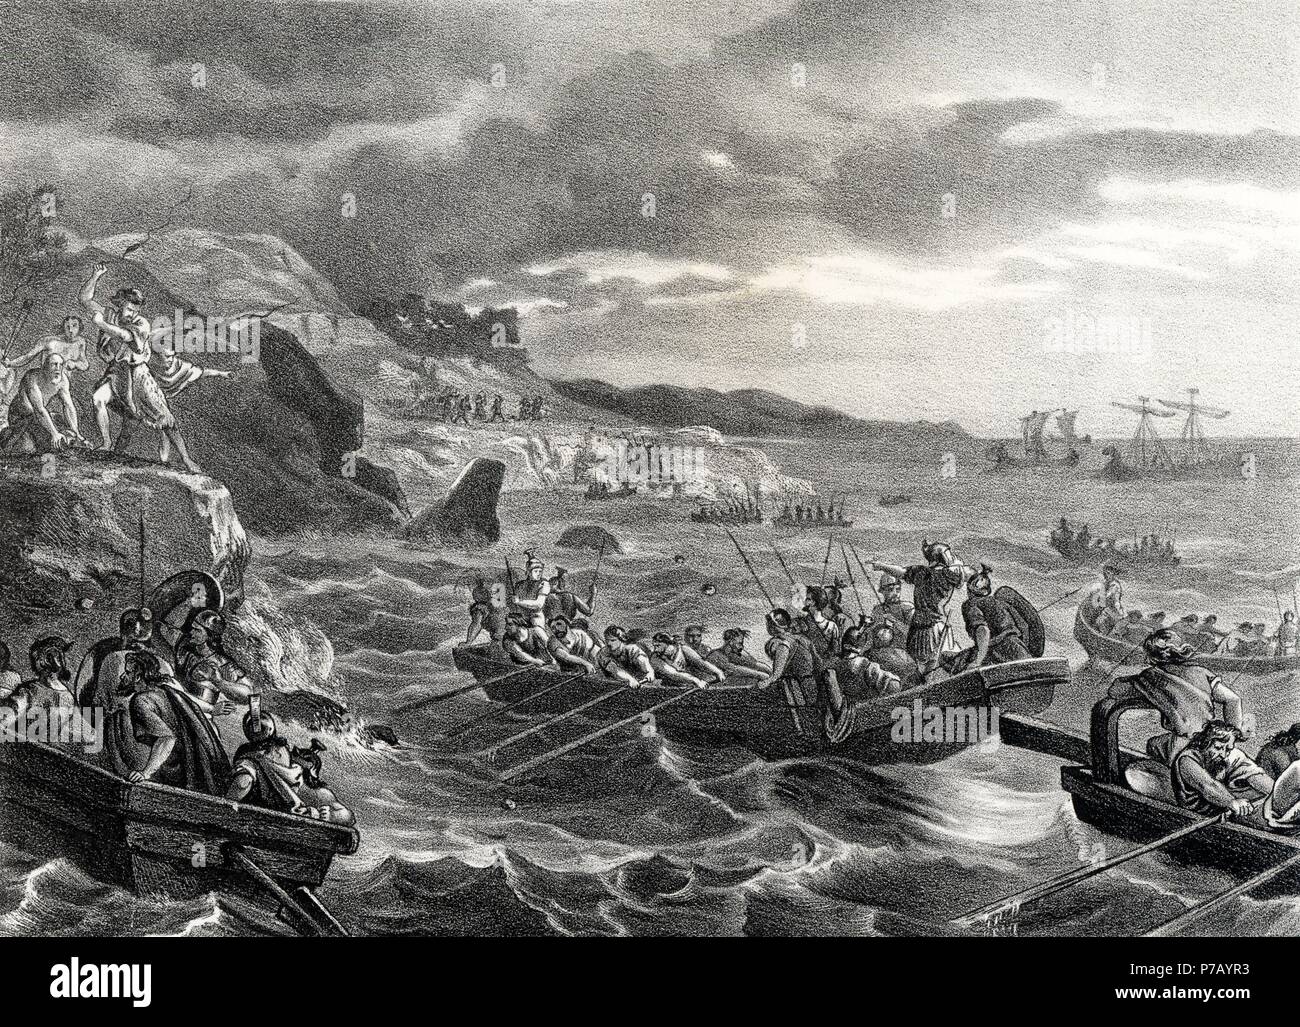 Historia. Intento de invasión de las islas Baleares por los cartagineses  hacia el año 200 a. C. Grabado de 1871 Stock Photo - Alamy